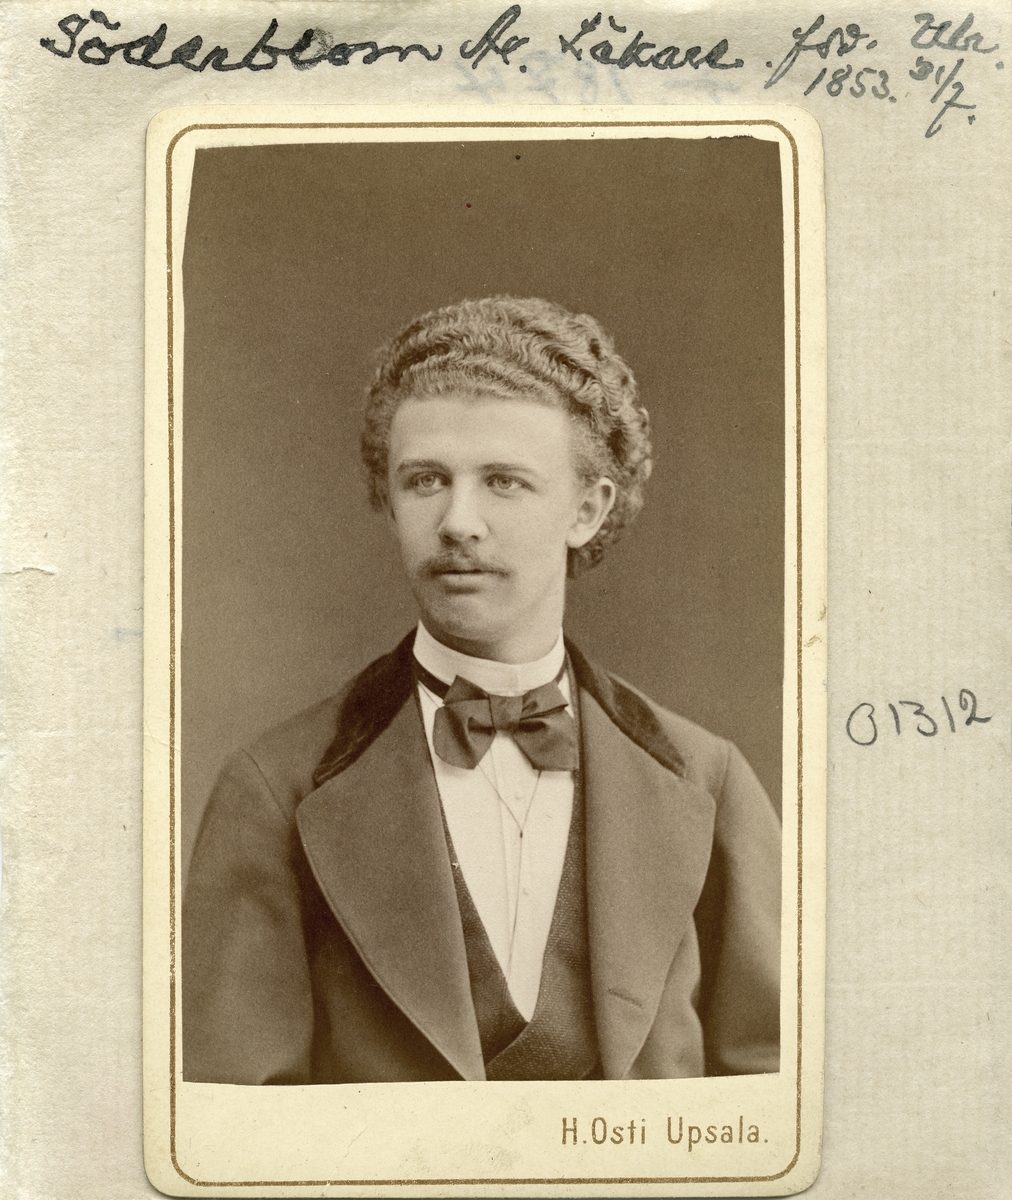 Porträtt av Arvid Söderbom. Född i Kronobergs län 1853 och sedermera provinsialläkare i Ulricehamn. Hans anknytning till Östergötland begränsas till att han från 1892 var gift med Gerda Wigander, född och uppvuxen i Linköping.